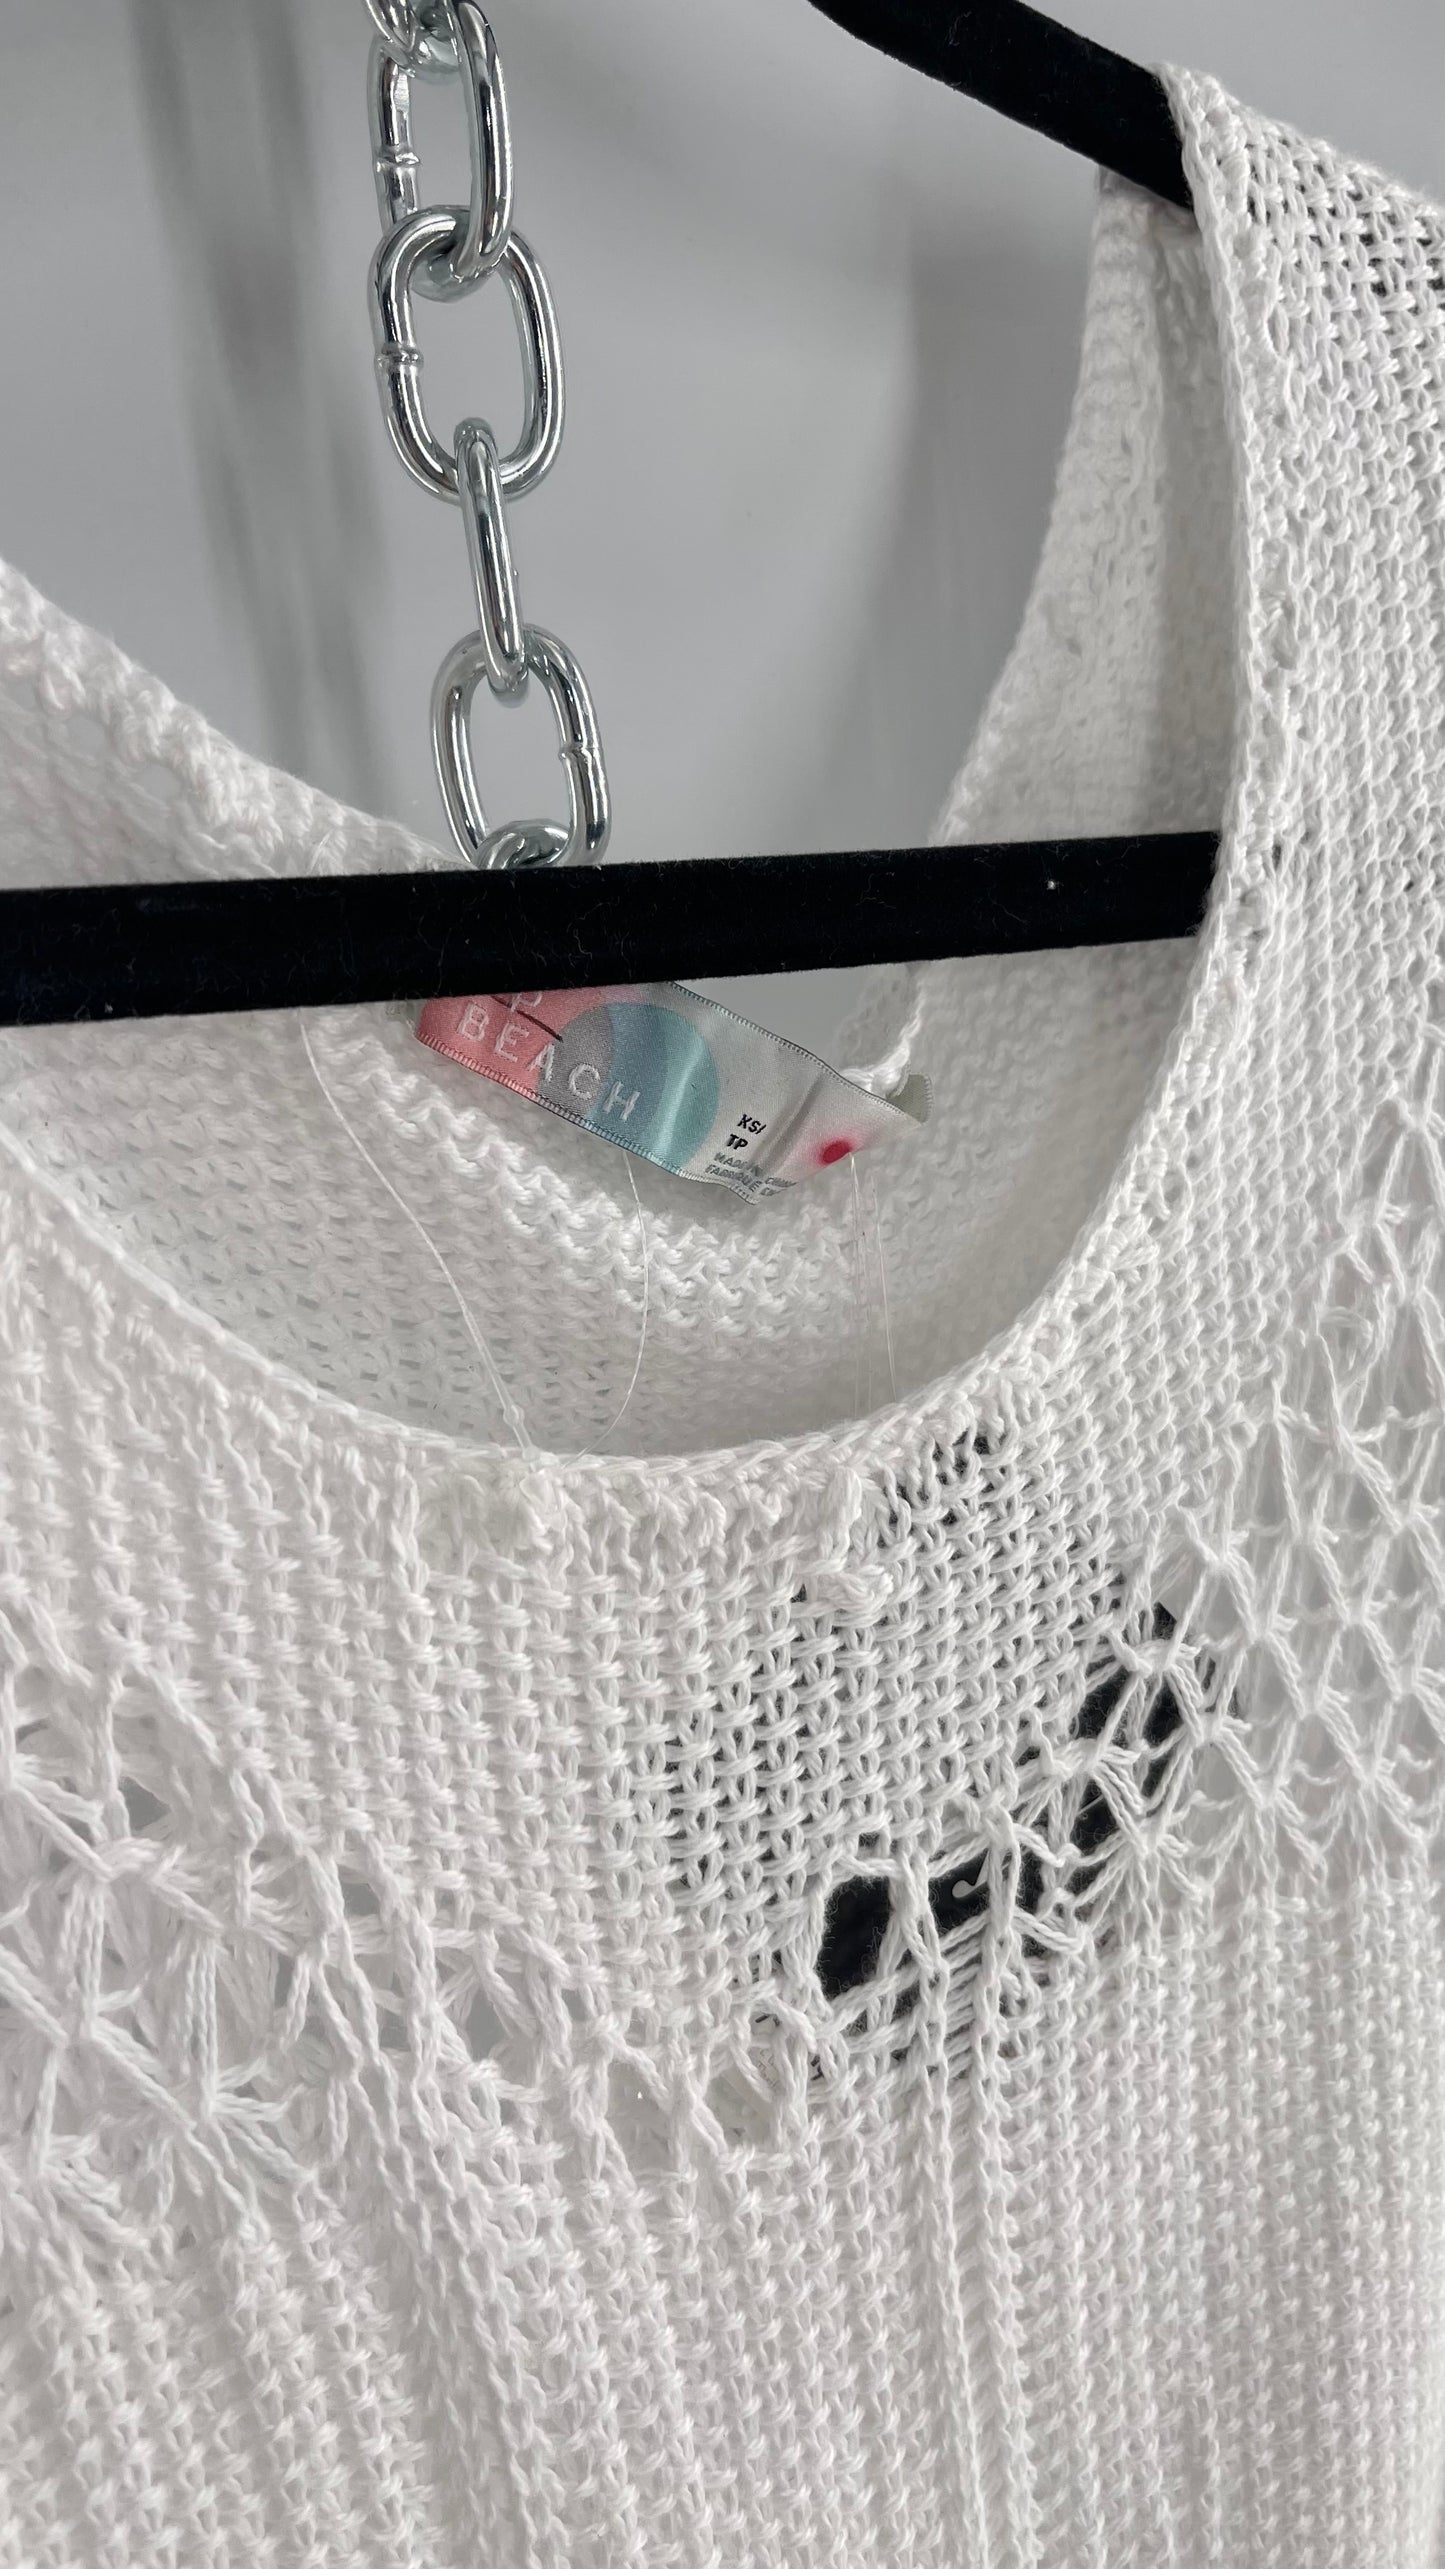 Free People White Crochet Knit Maxi Dress (XS)